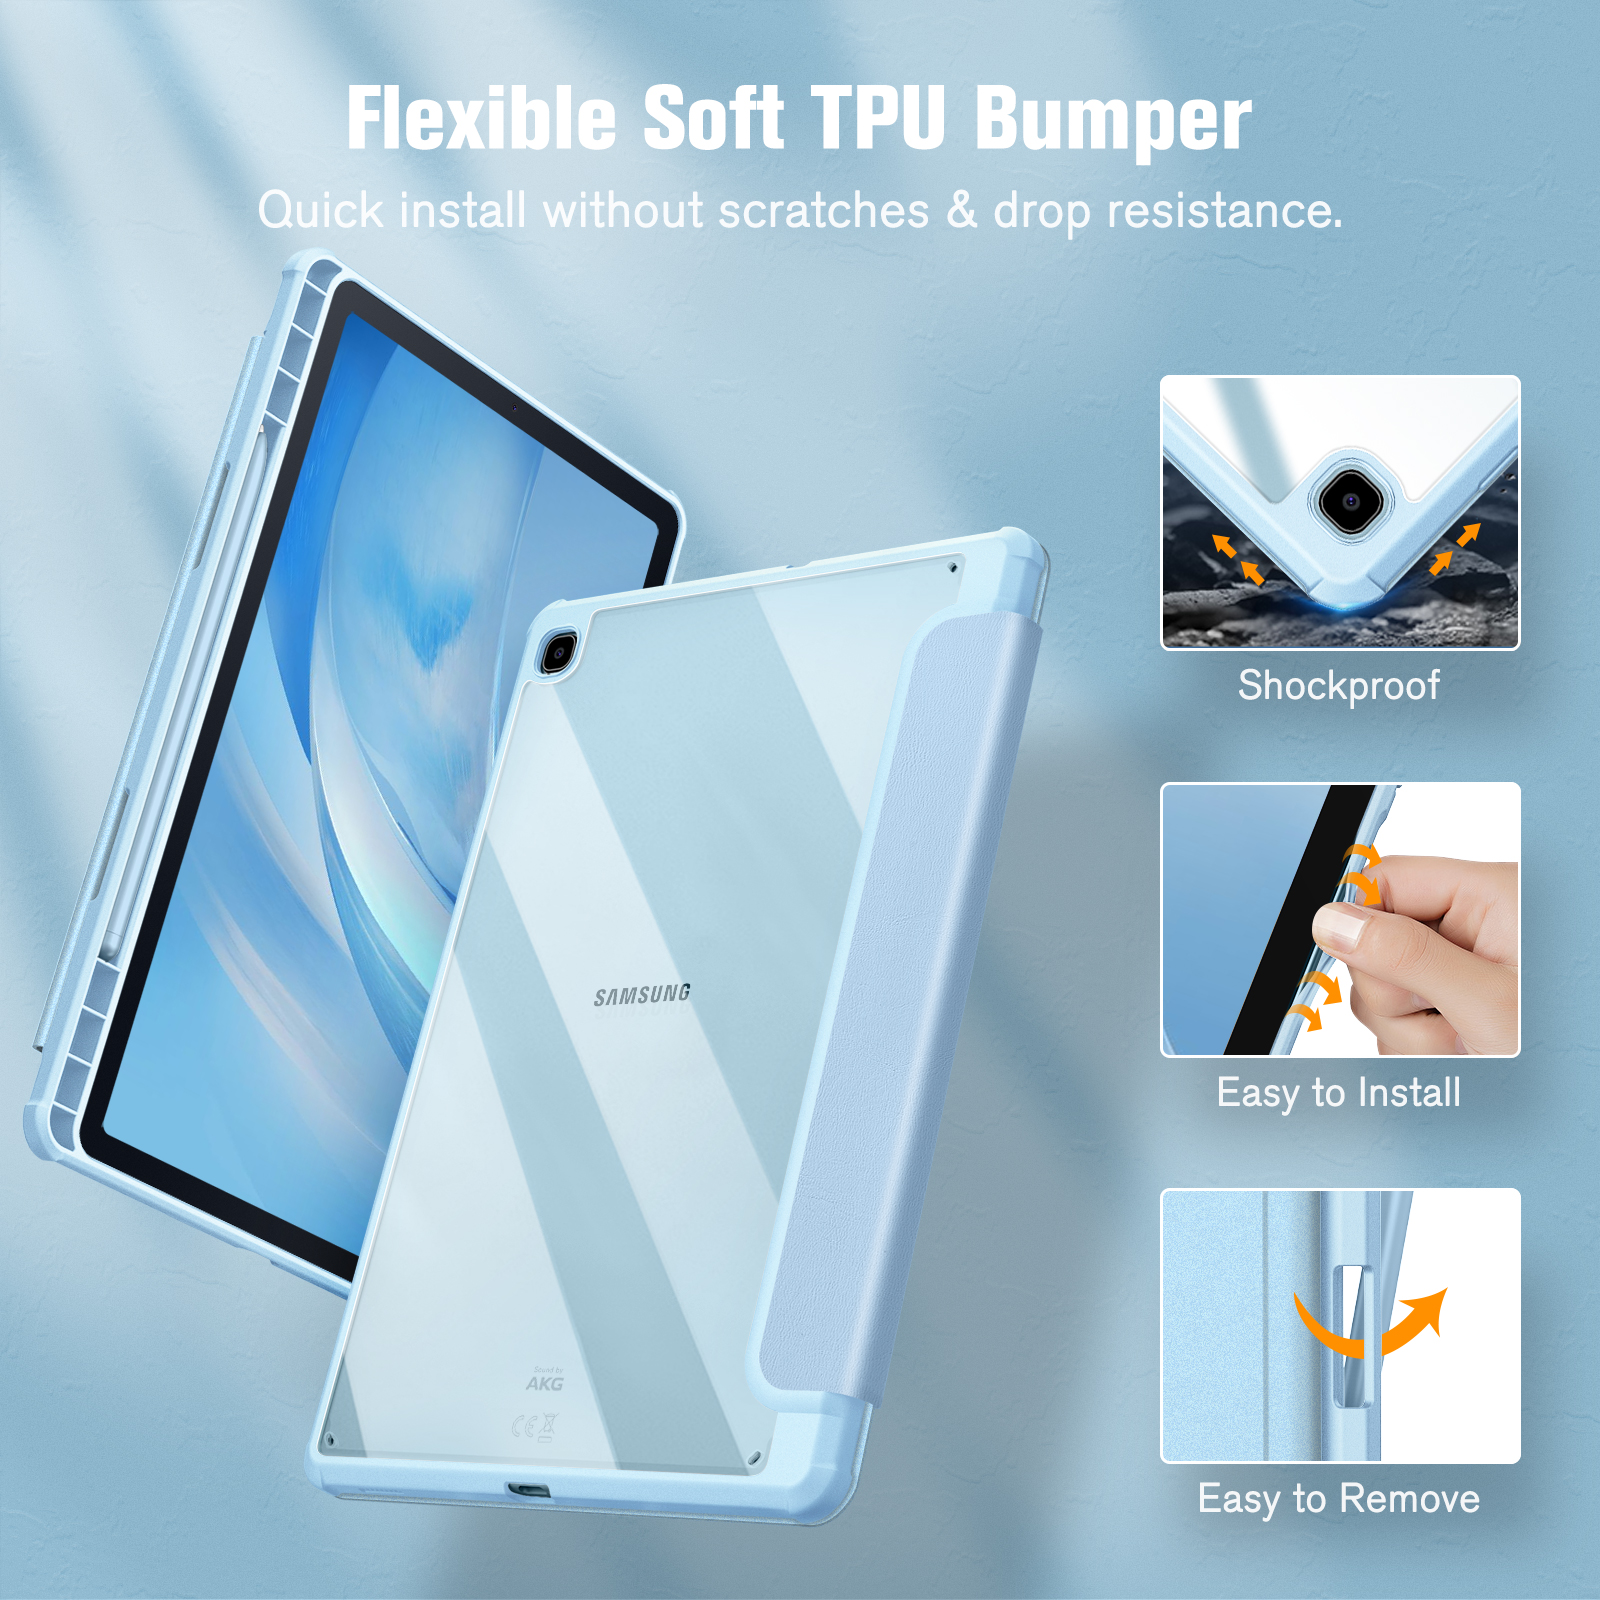 Hülle FINTIE für Himmelblau Samsung Bookcover Polyurethan, Tablethülle Thermoplastisches